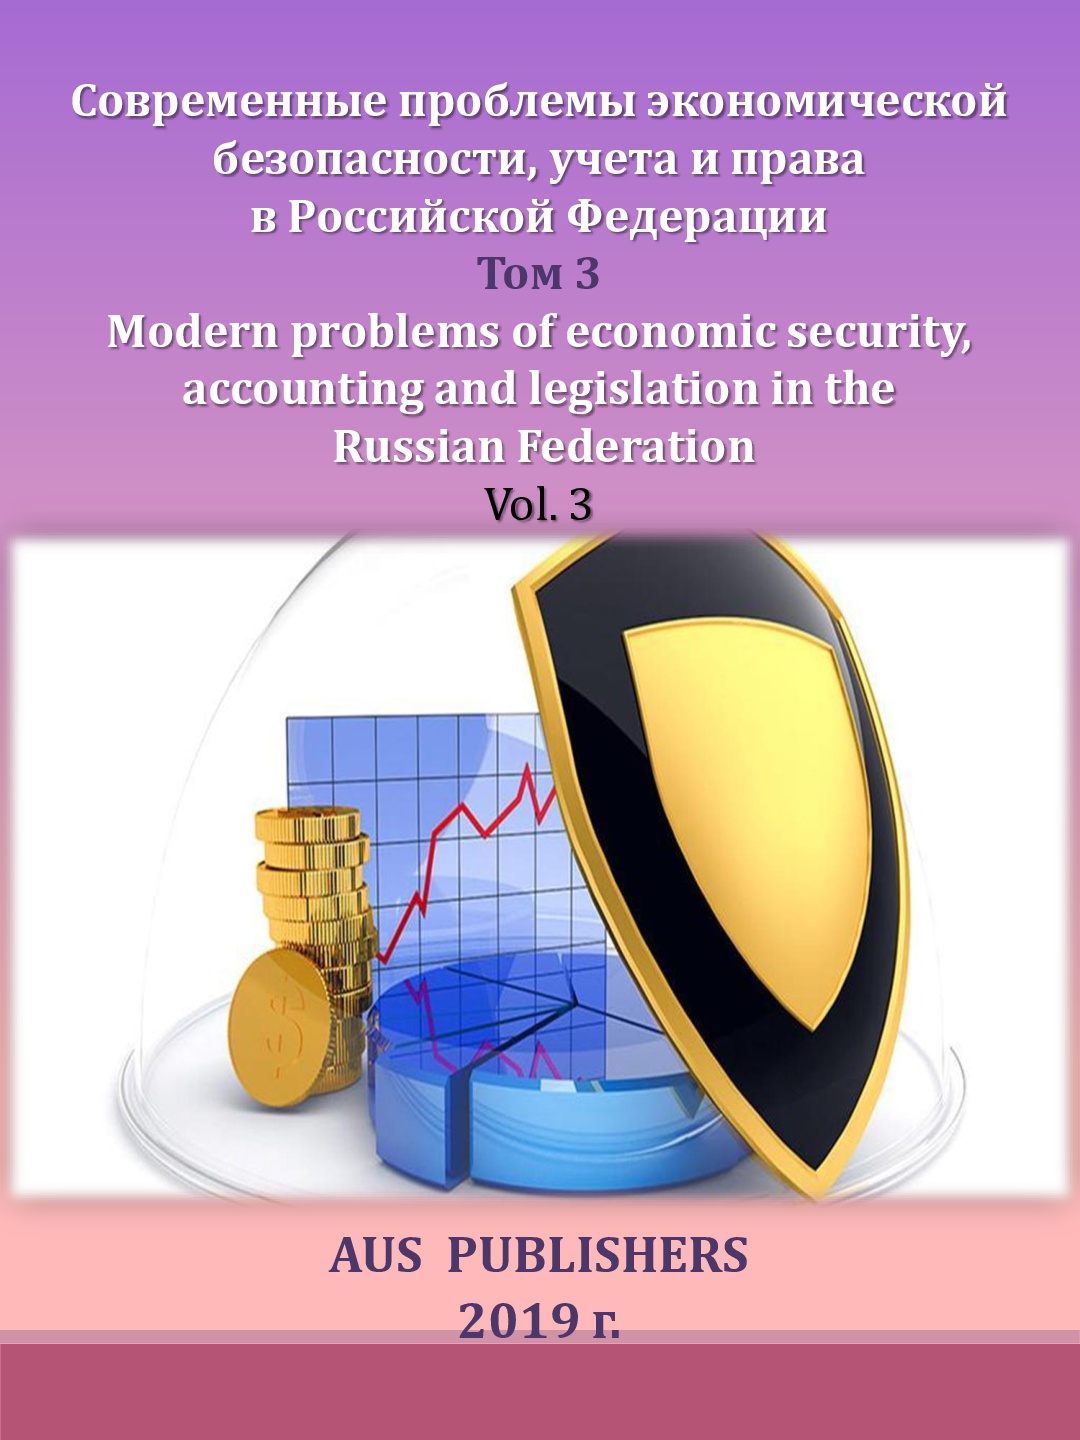             Современные проблемы экономической безопасности, учета и права в Российской Федерации. Том 3
    